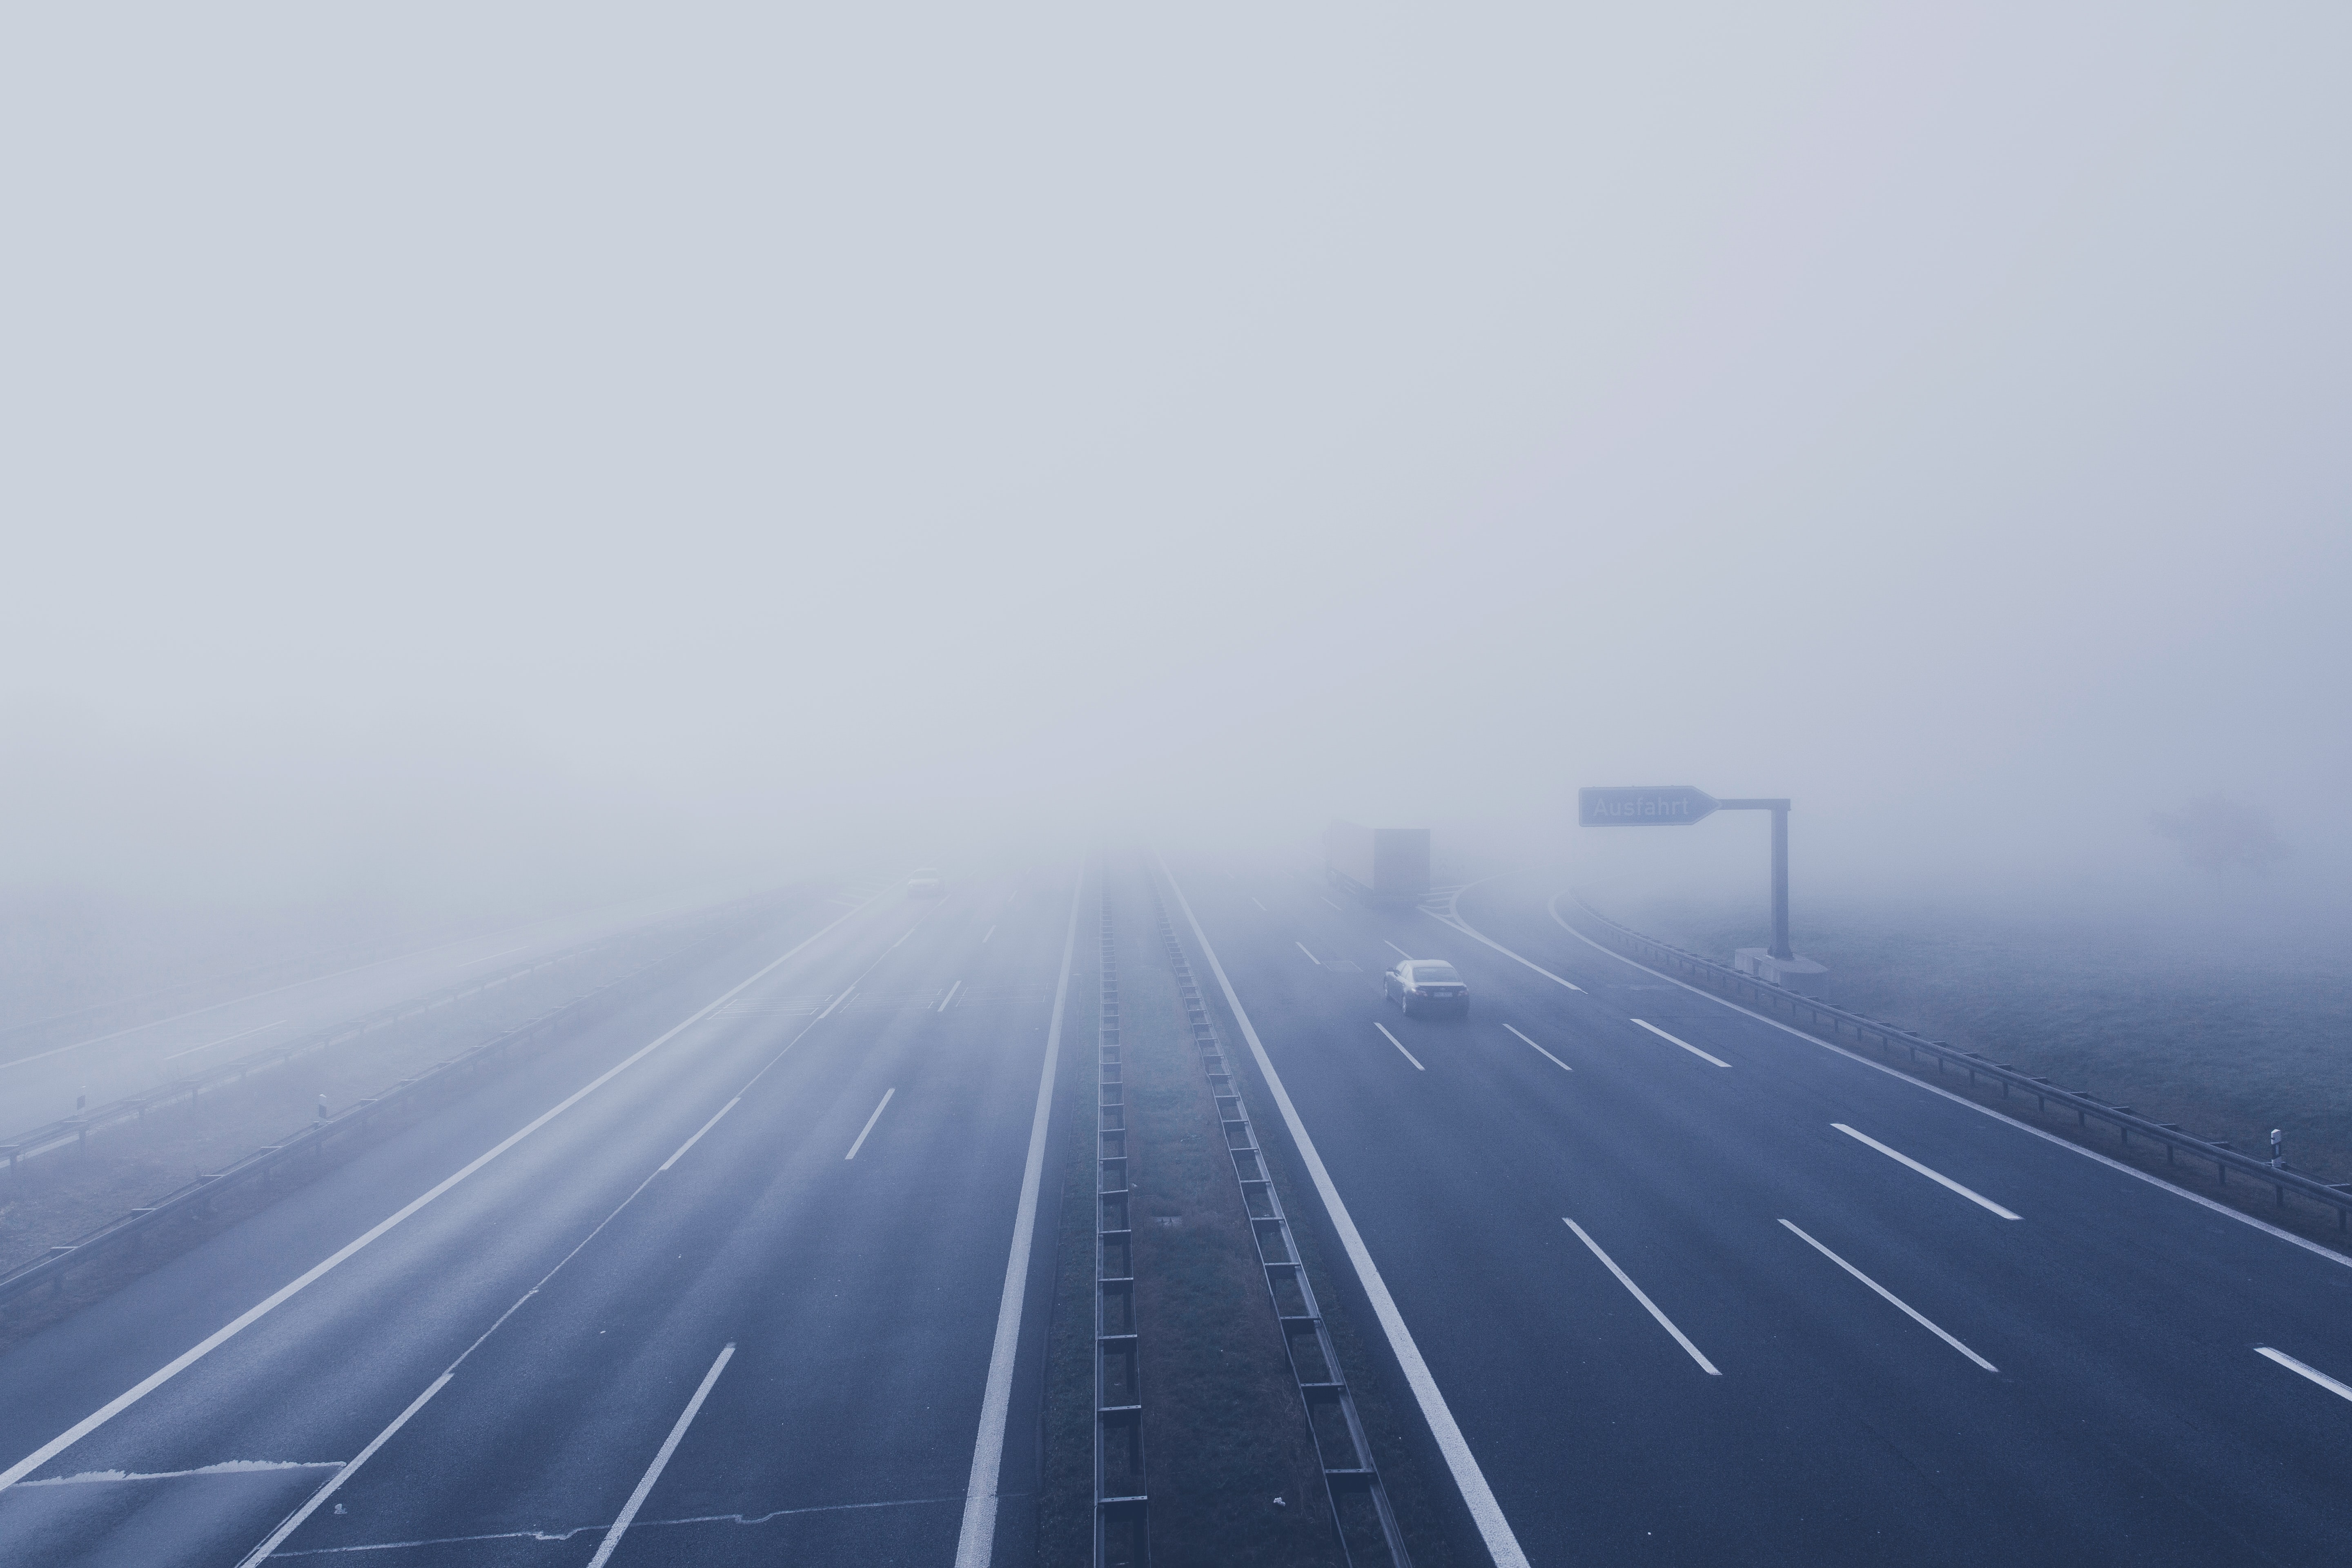 Foggy highway; image by Markus Spiske, via Unsplash.com.